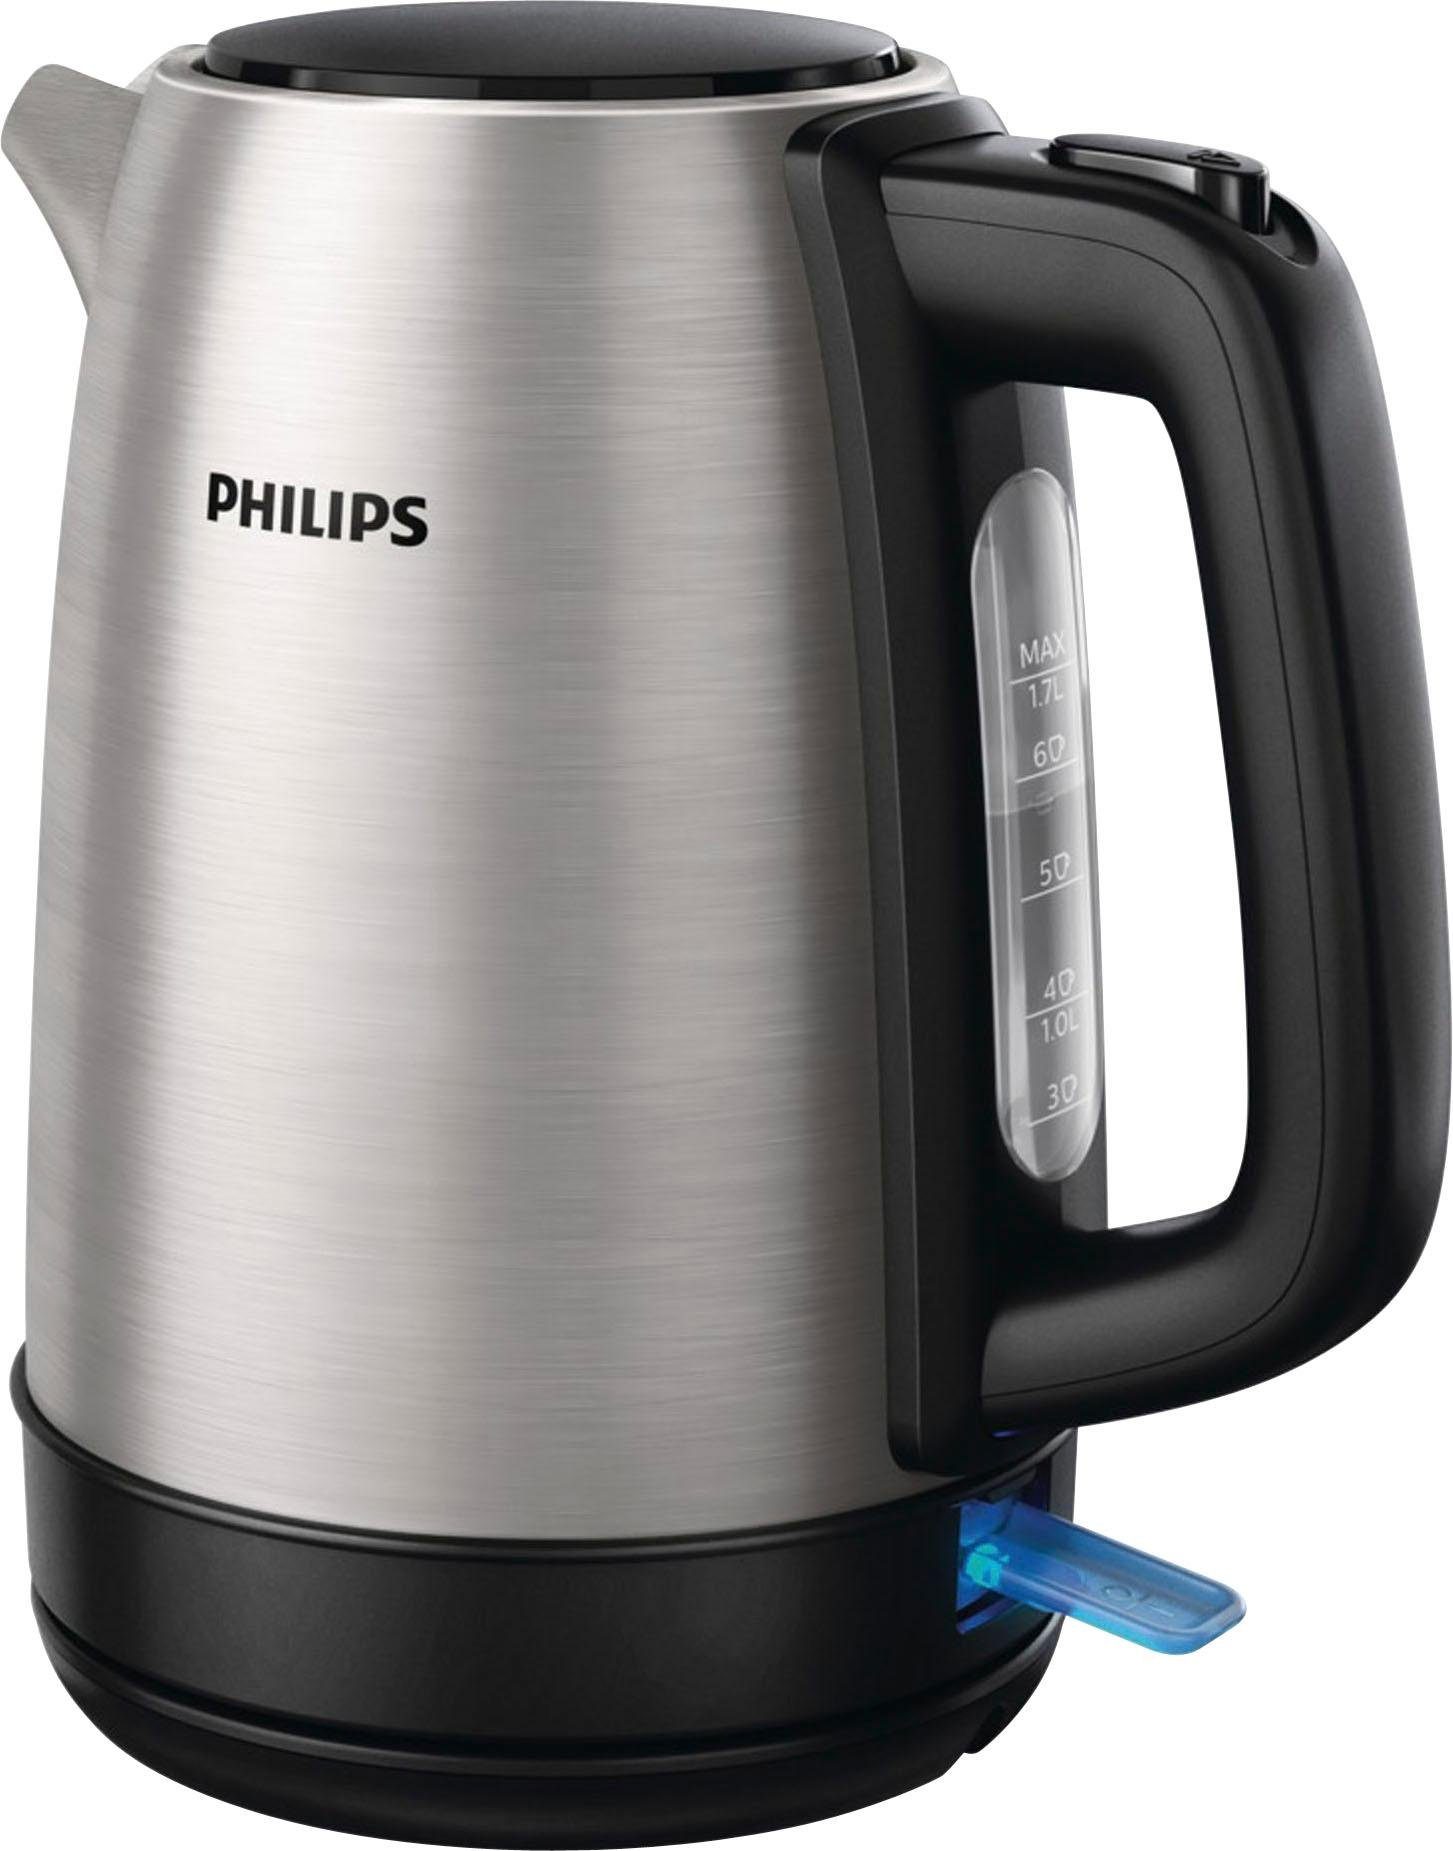 Philips Wasserkocher HD9350/90 Daily Collection, 1,7 l, 2200 W, Edelstahl  online kaufen | OTTO